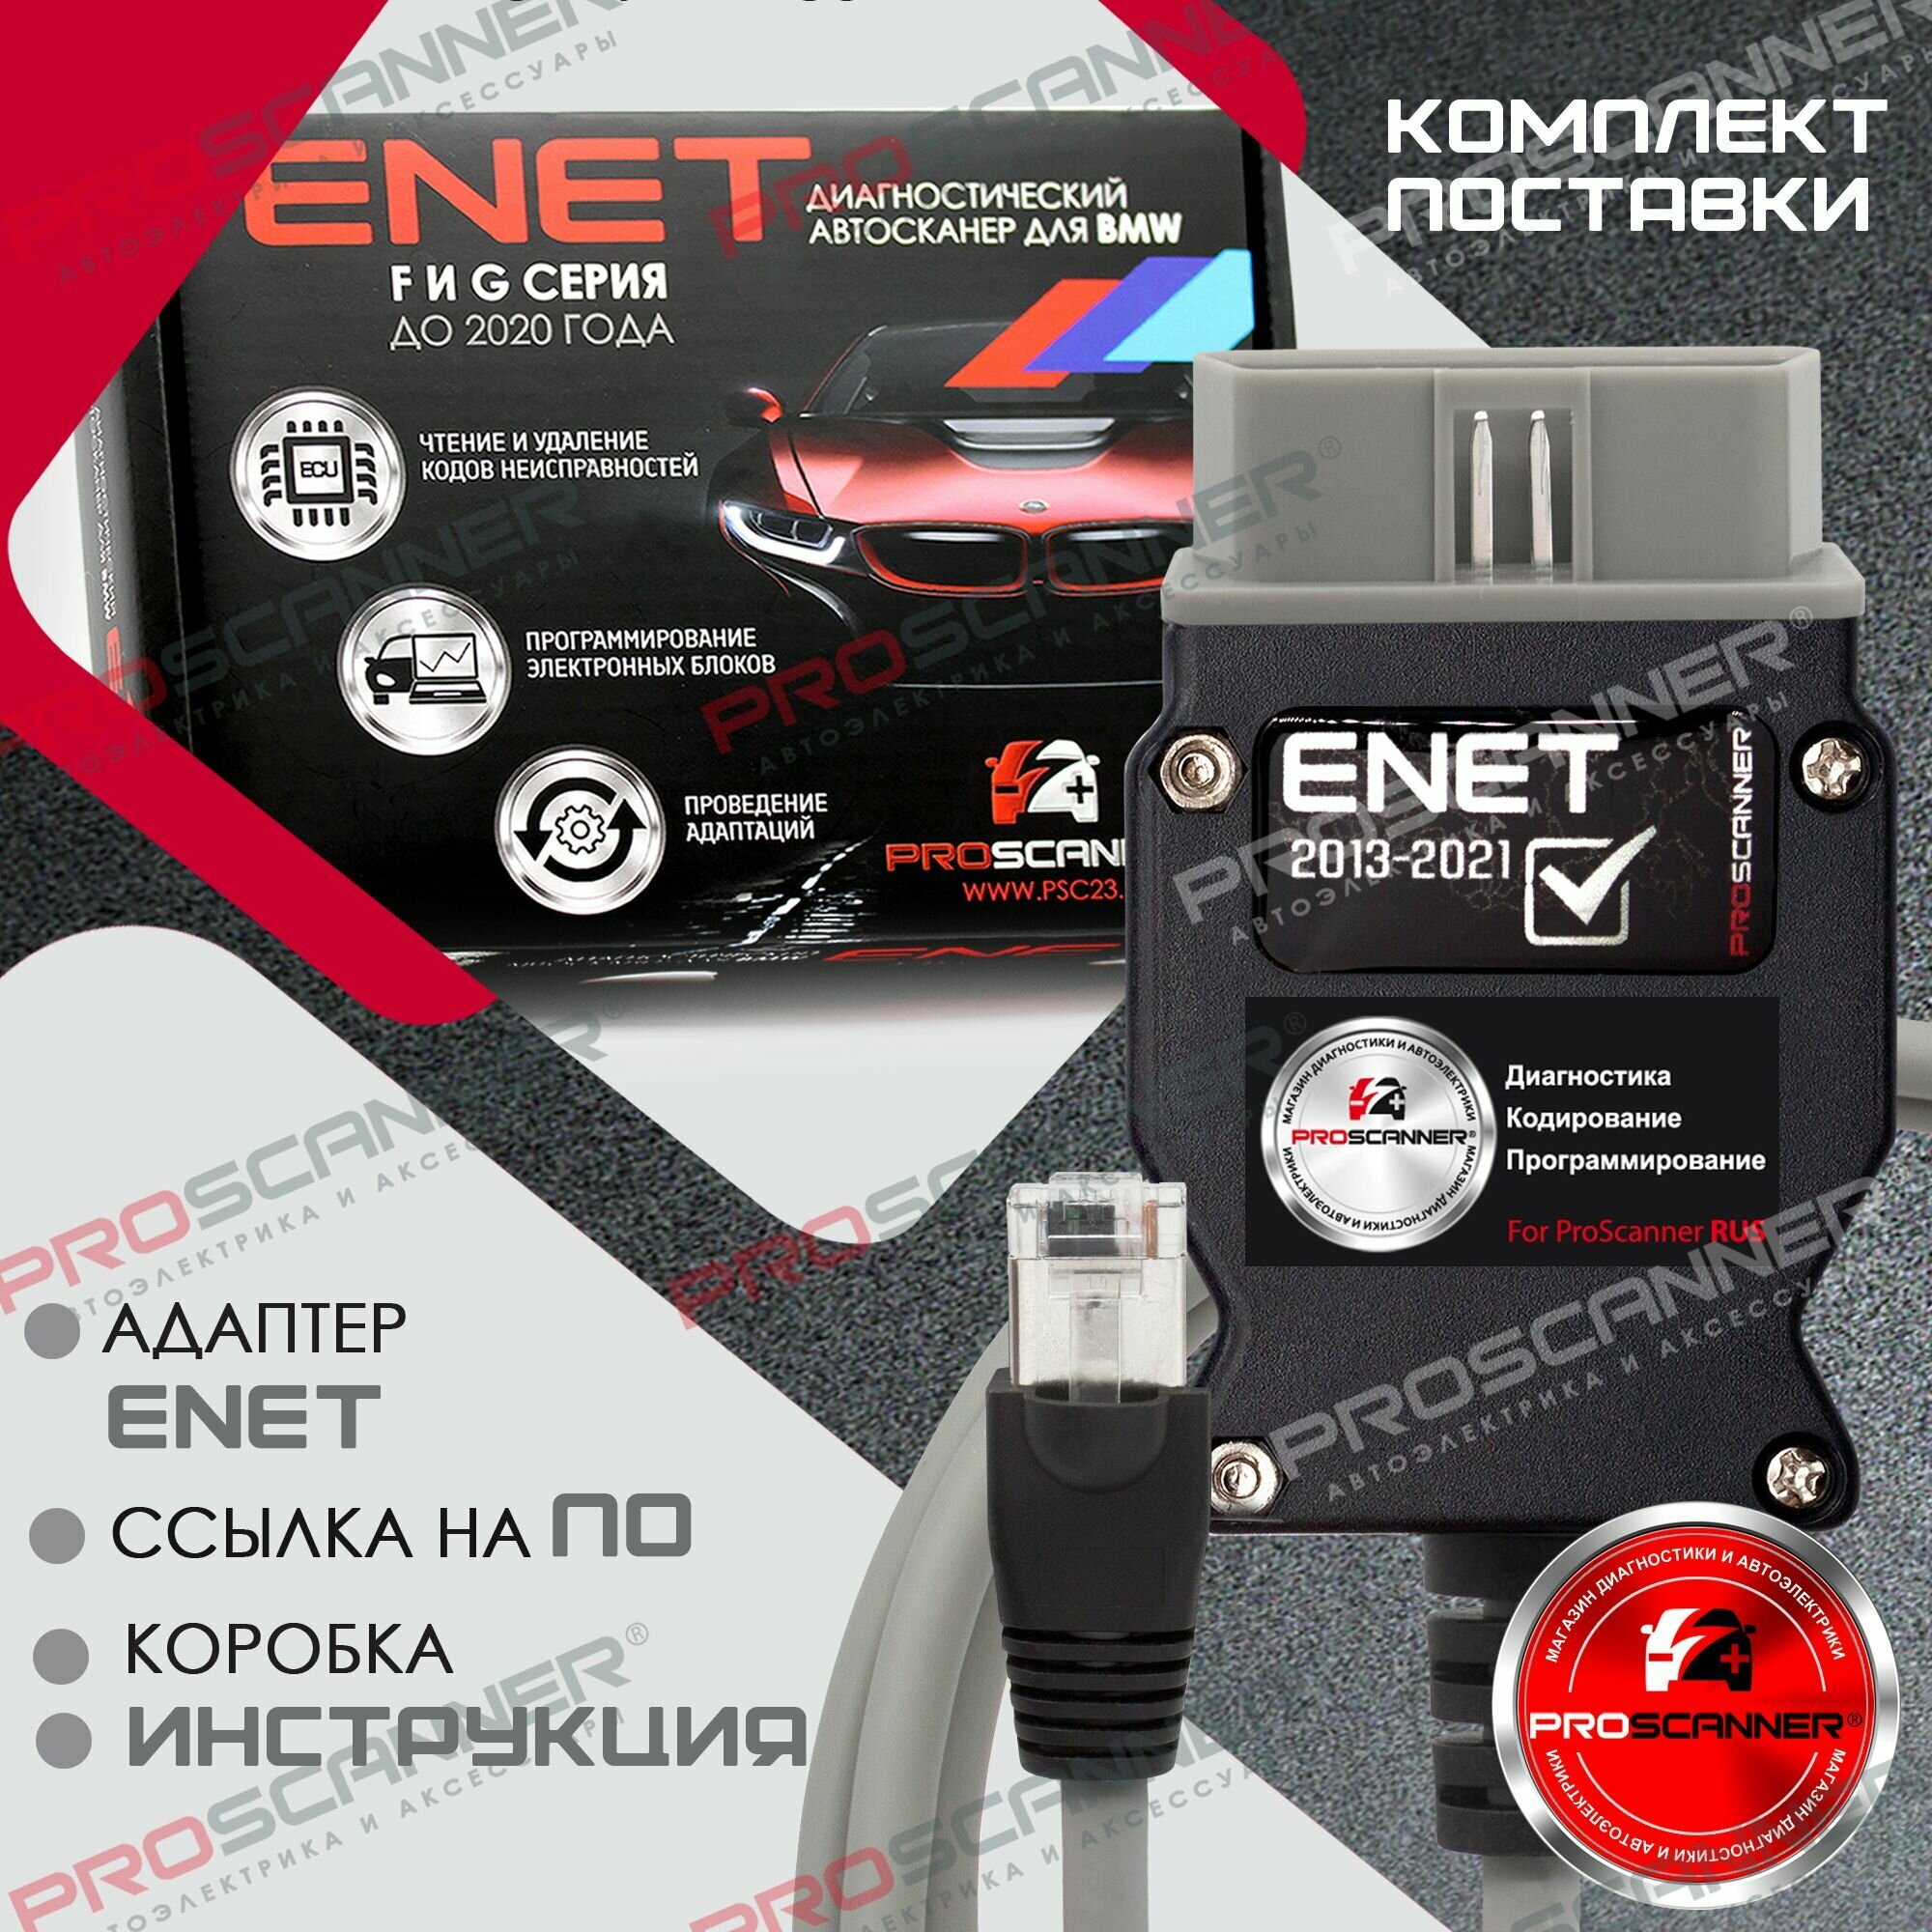 Автосканер для BMW ENET PRO (F и G серии) серый Полная версия / Диагностический сканер / Кабель BMW enet для диагностики, кодирования F и G серий